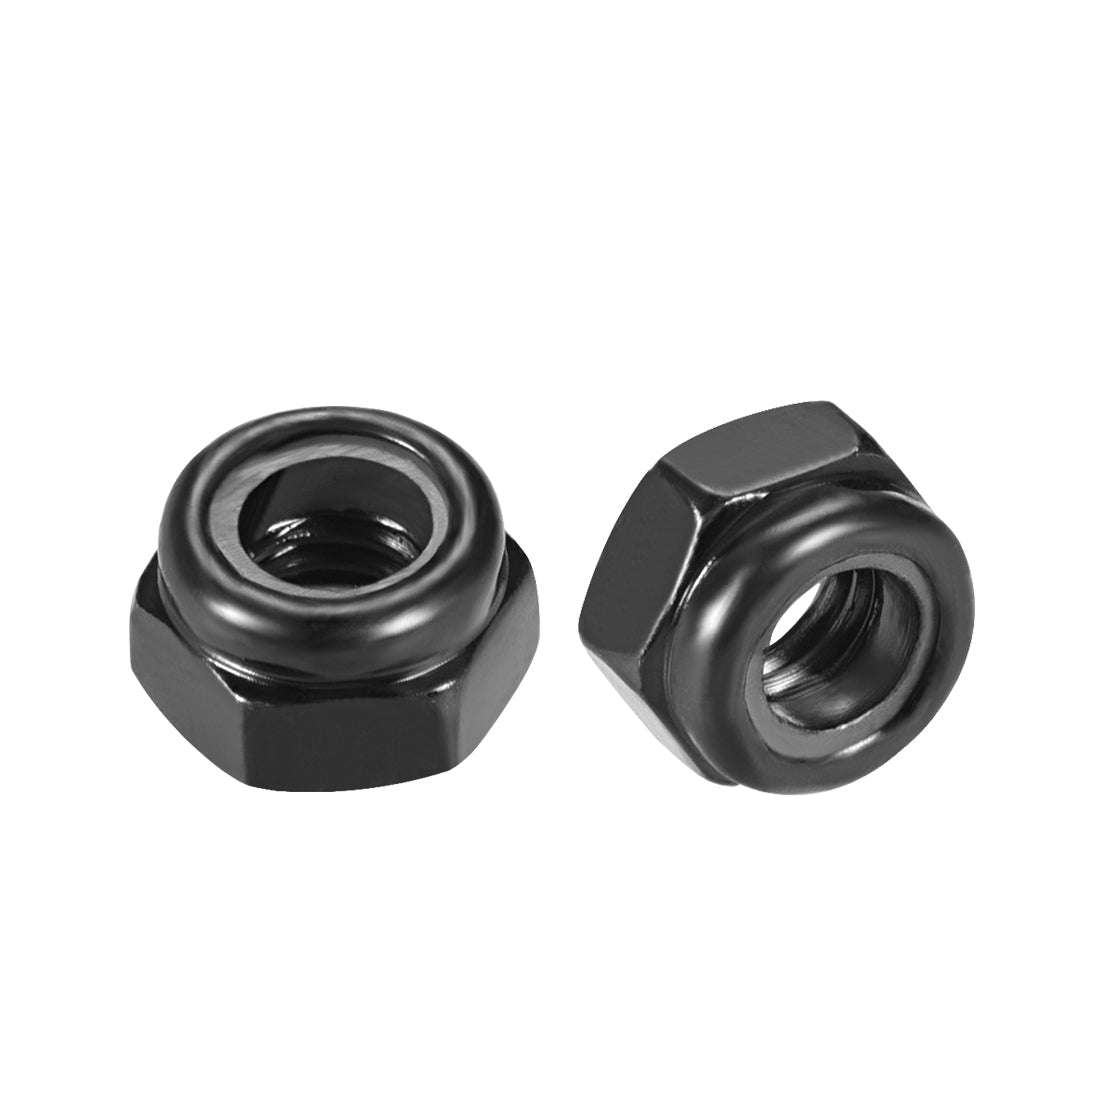 uxcell Uxcell M5x0.8mm Hex Lock Nuts Carbon Steel Nylon Insert Self-Lock Nuts, 50Pcs Black